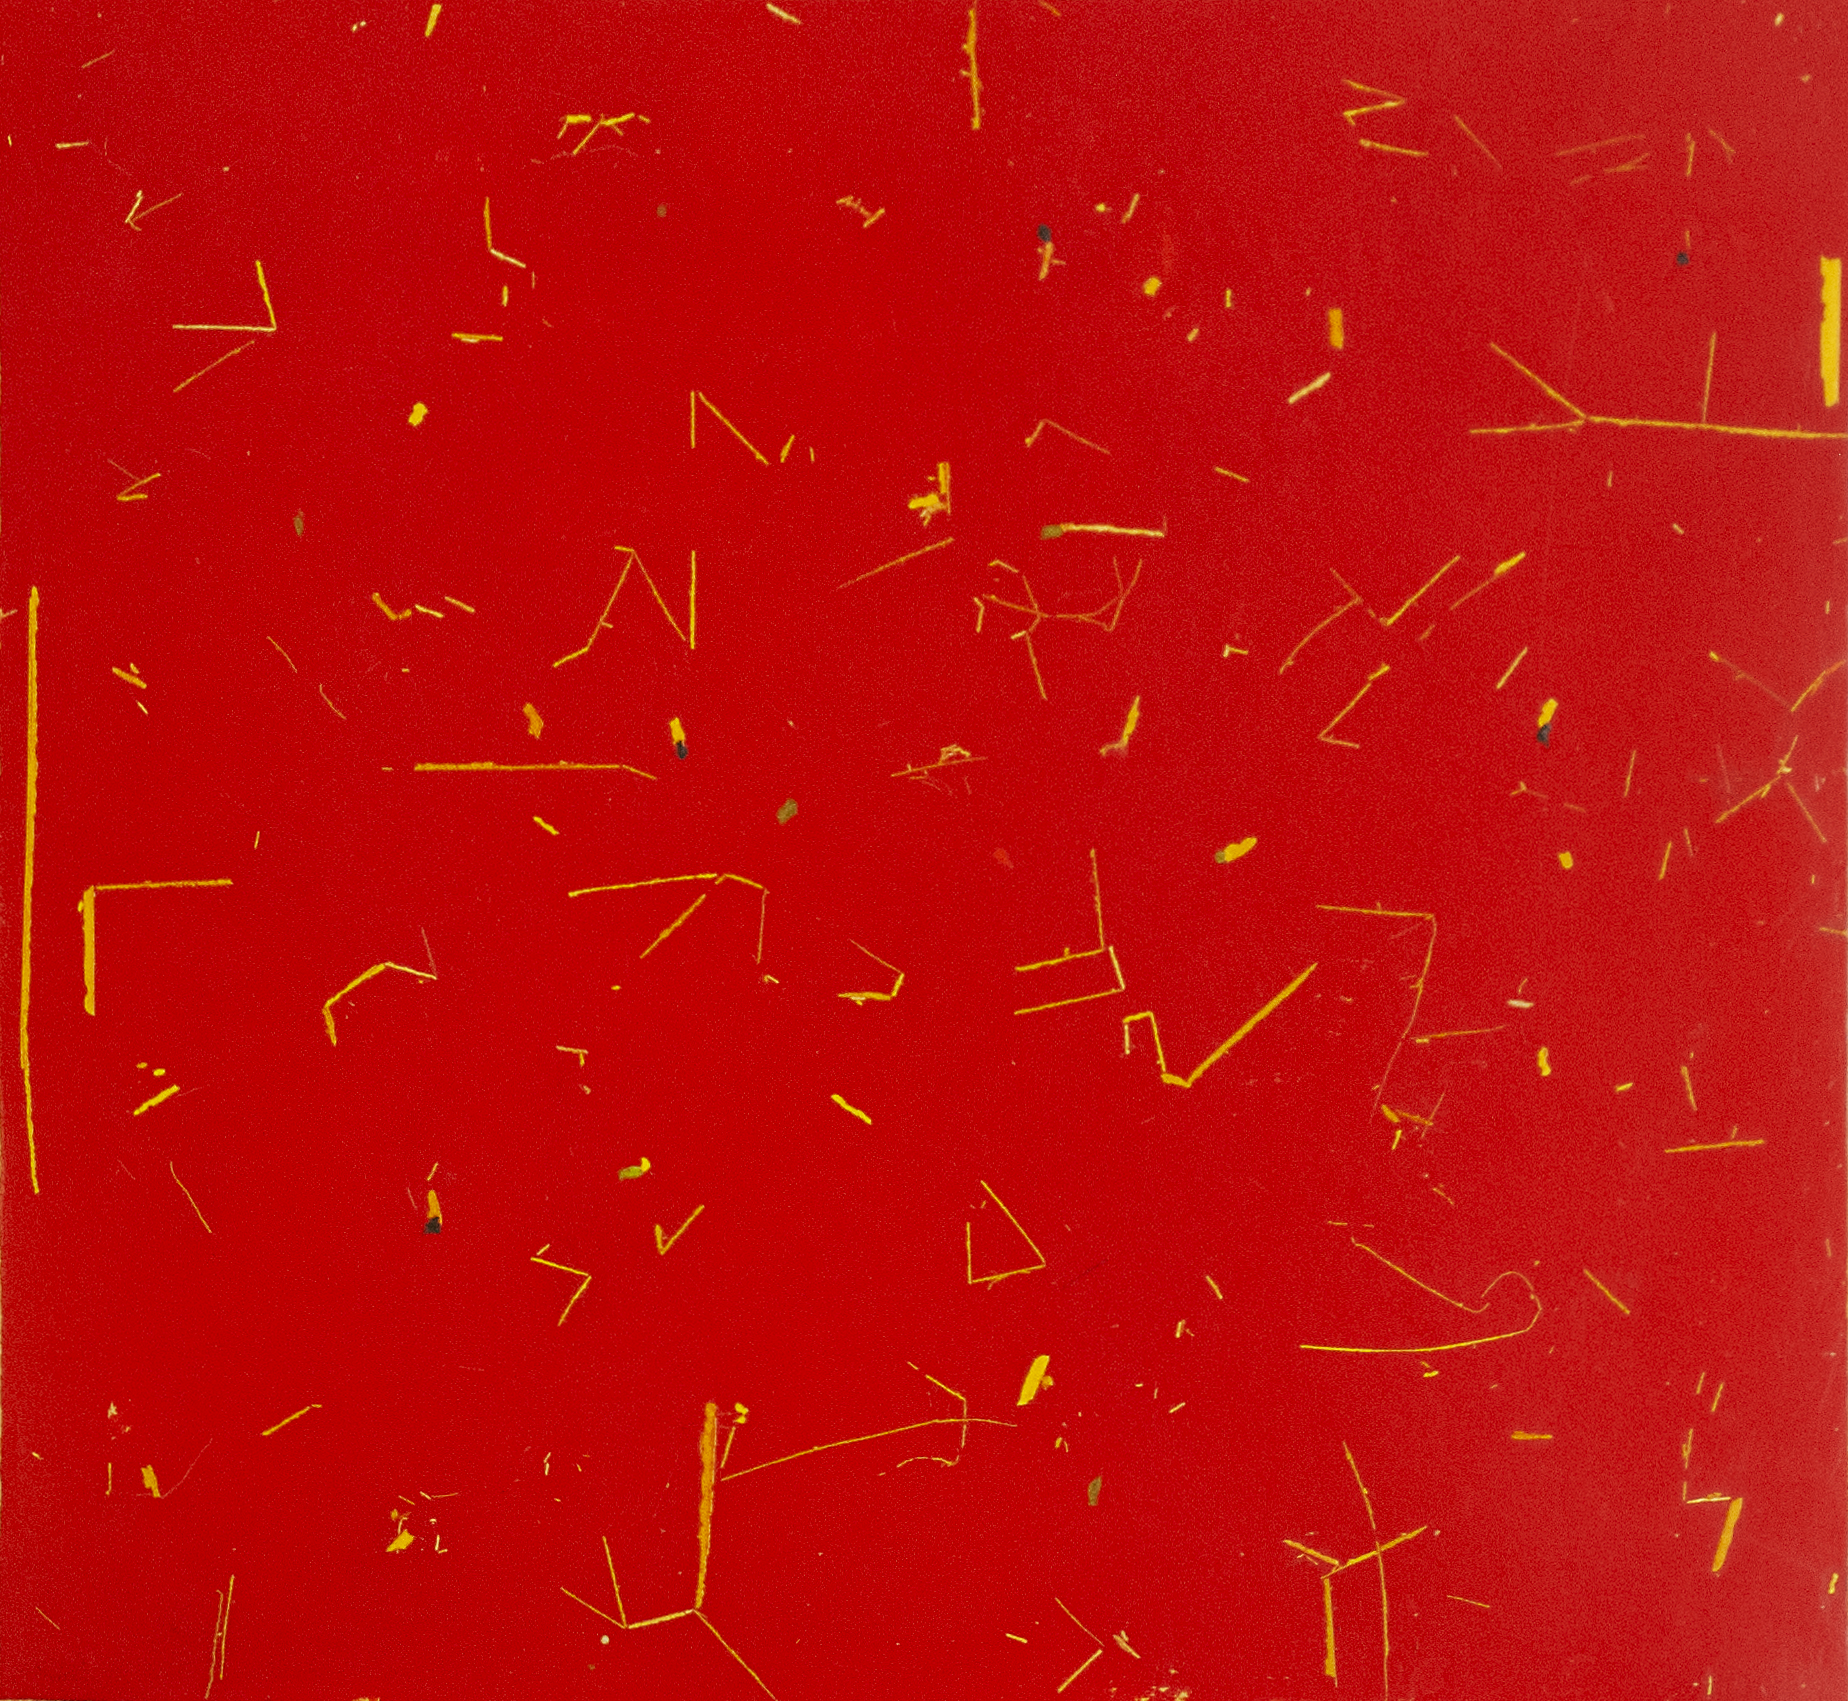 RC Abstracto con fondo Rojo 2021 475x52 cm Oil on paper Pigment Gallery Galería de Arte en Barcelona Abstracto con fondo Rojo